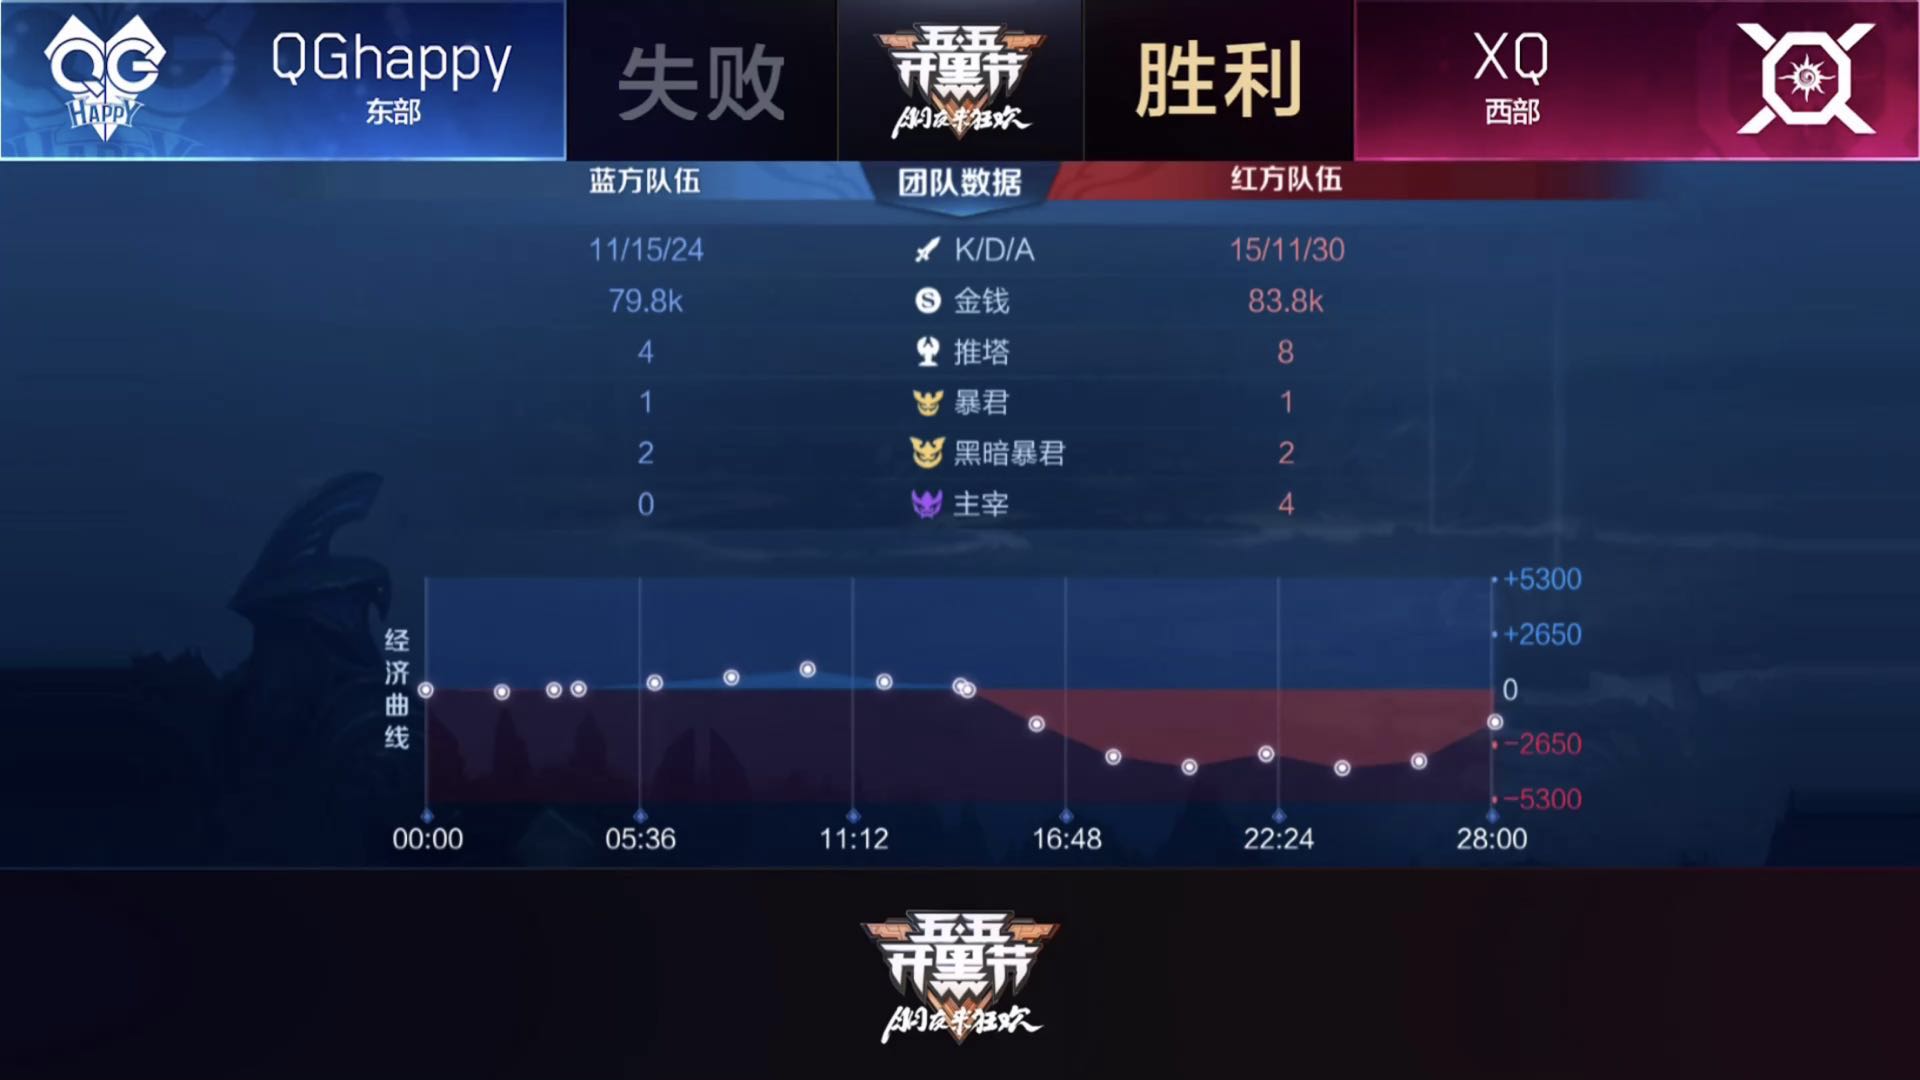 [战报] QGhappy三比二战胜XQ 锁定季后赛席位！